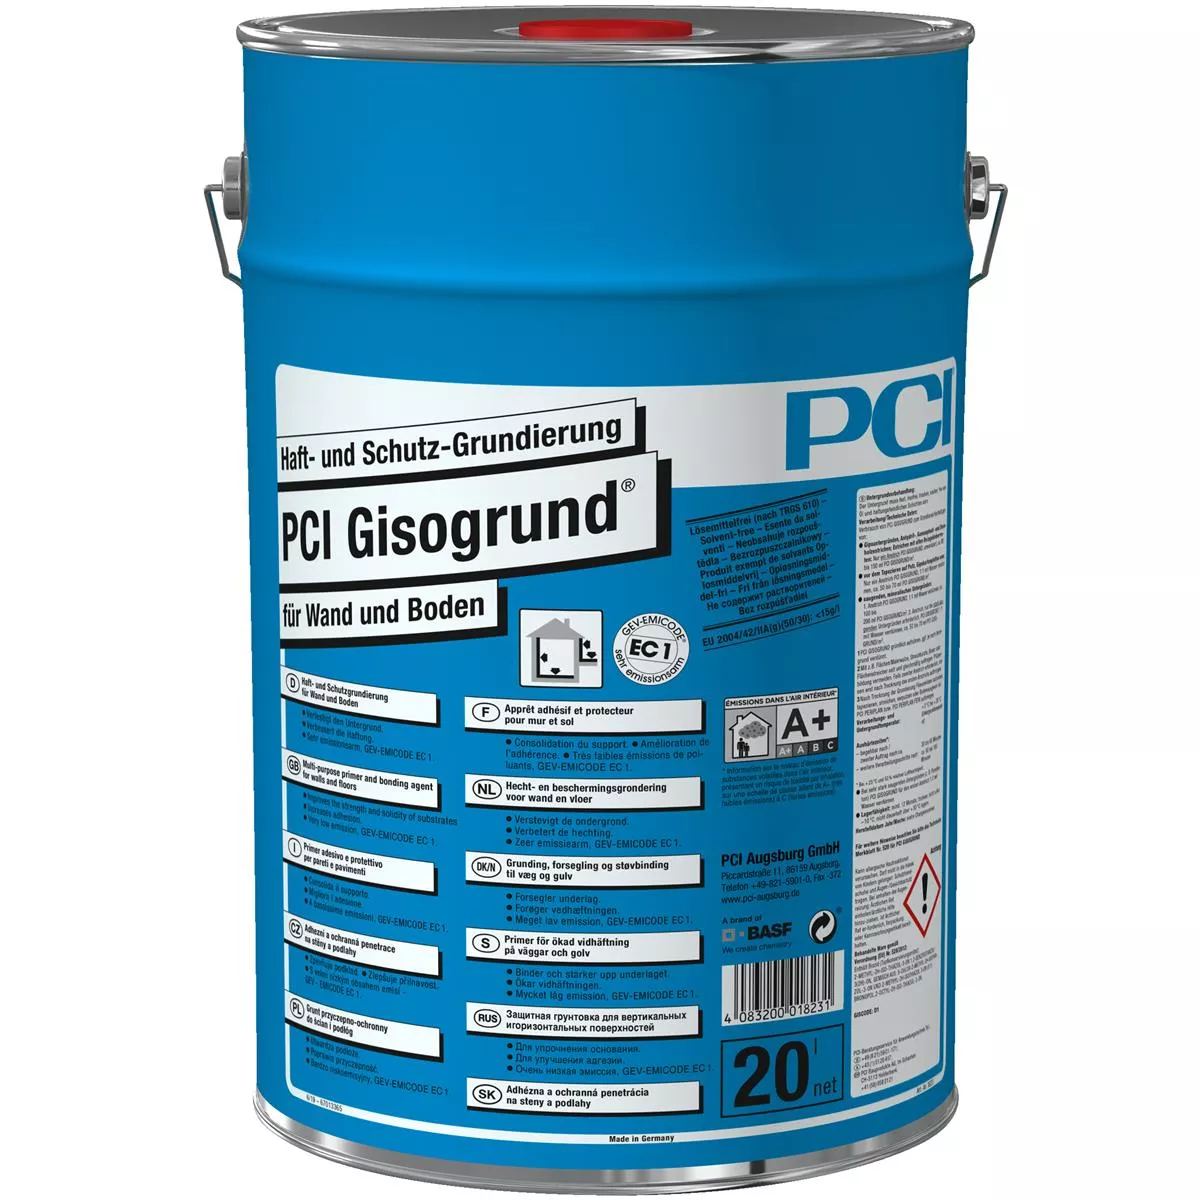 Adhésif PCI Gisogrund et apprêt protecteur bleu 20 litres